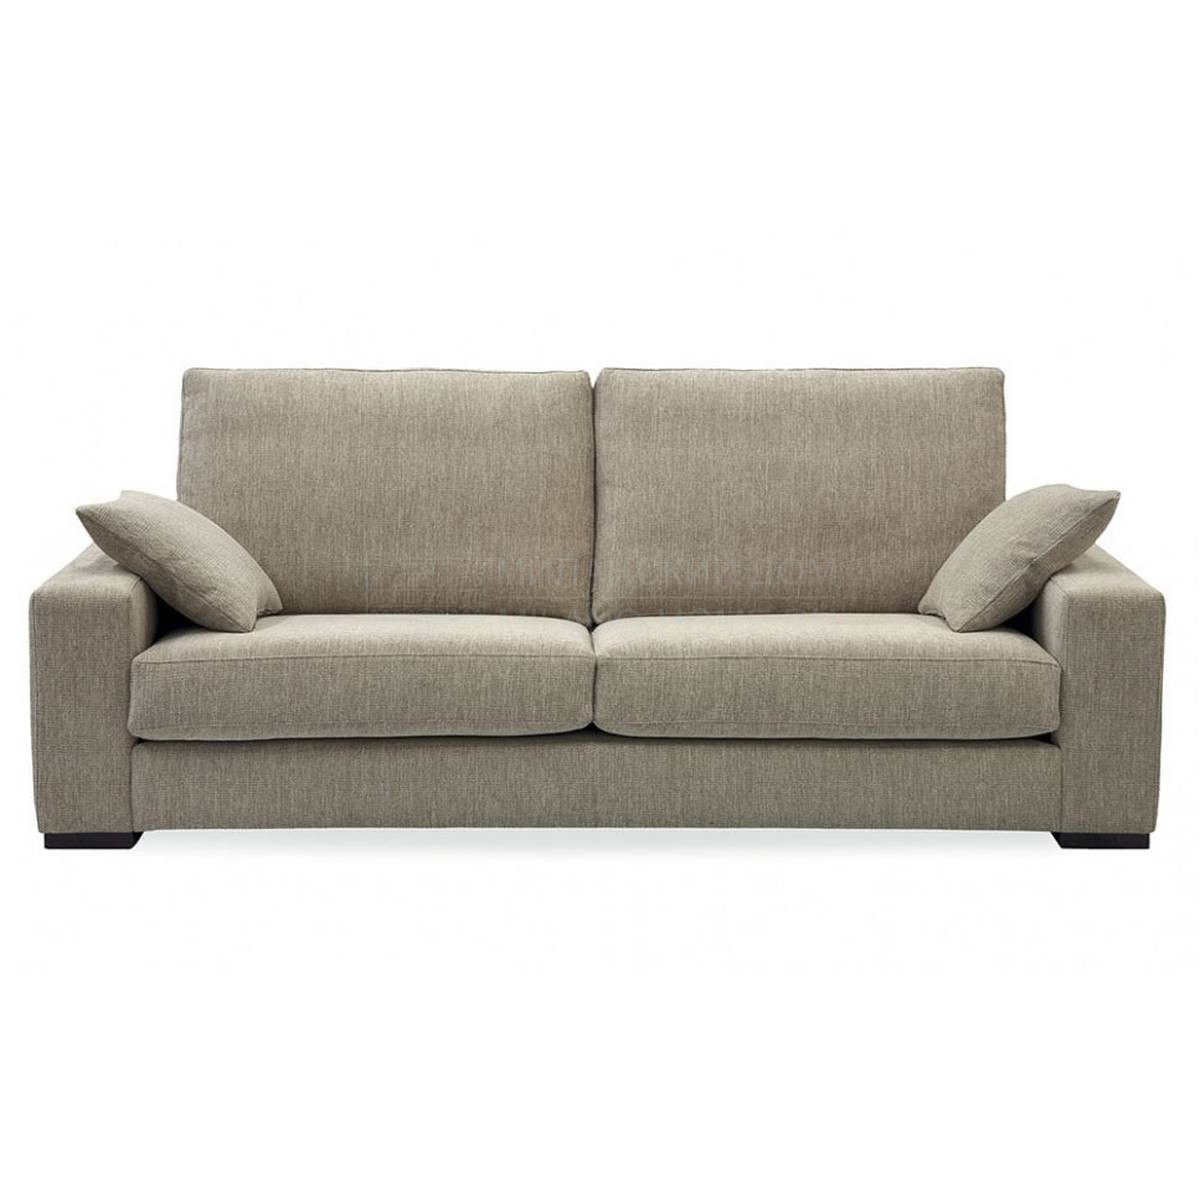 Прямой диван Duomo/sofa из Испании фабрики MANUEL LARRAGA